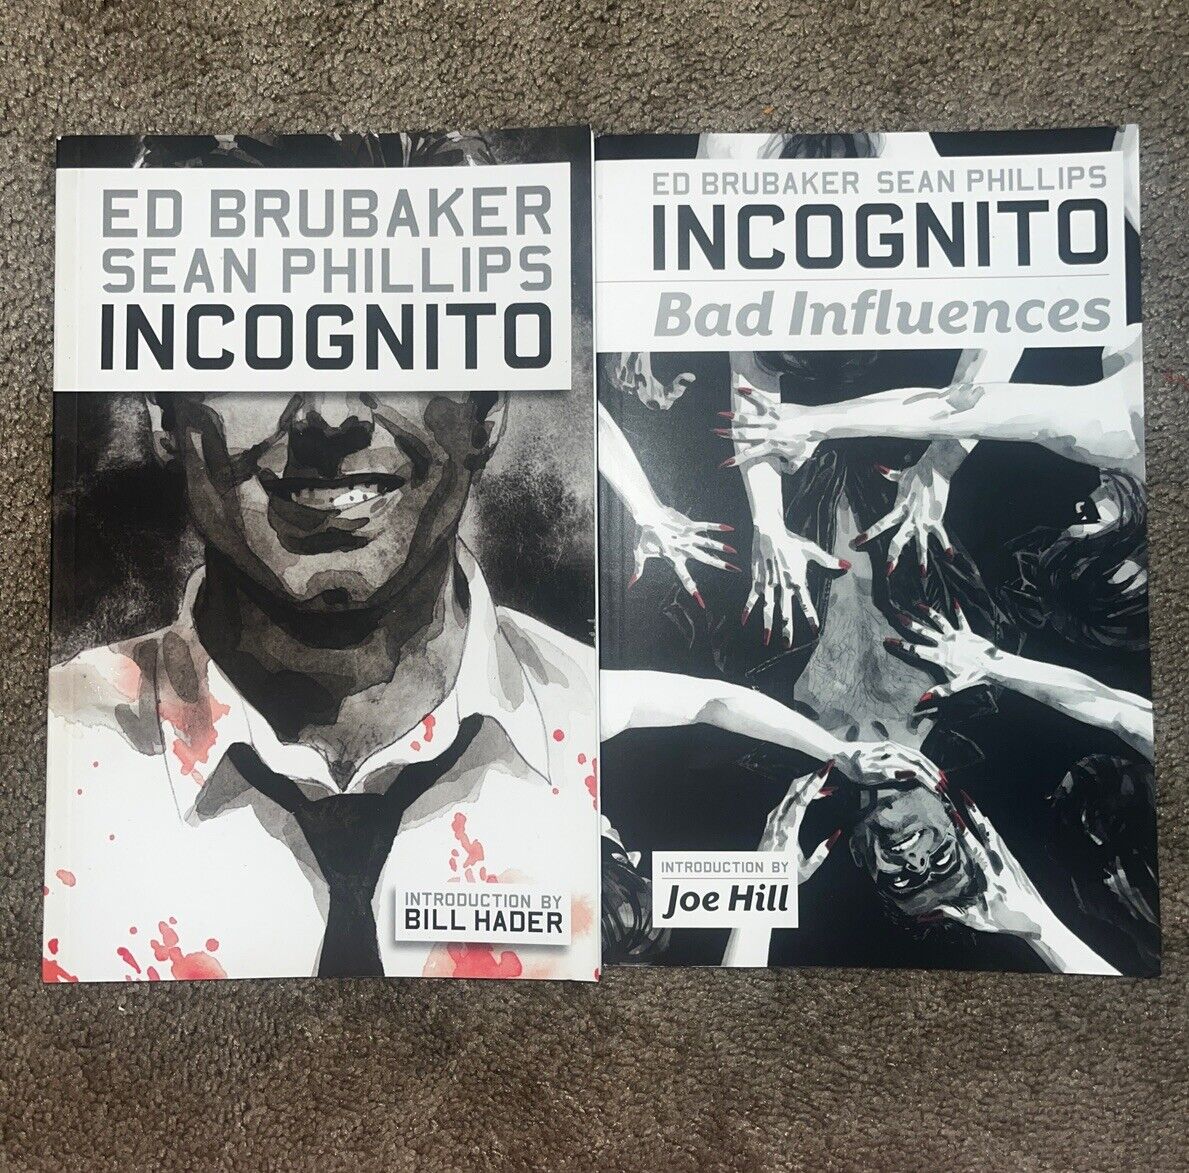 Incognito Vol. 1-2 (Bad Influences) - Ed Brubaker and Sean Phillips (PB, 2009)